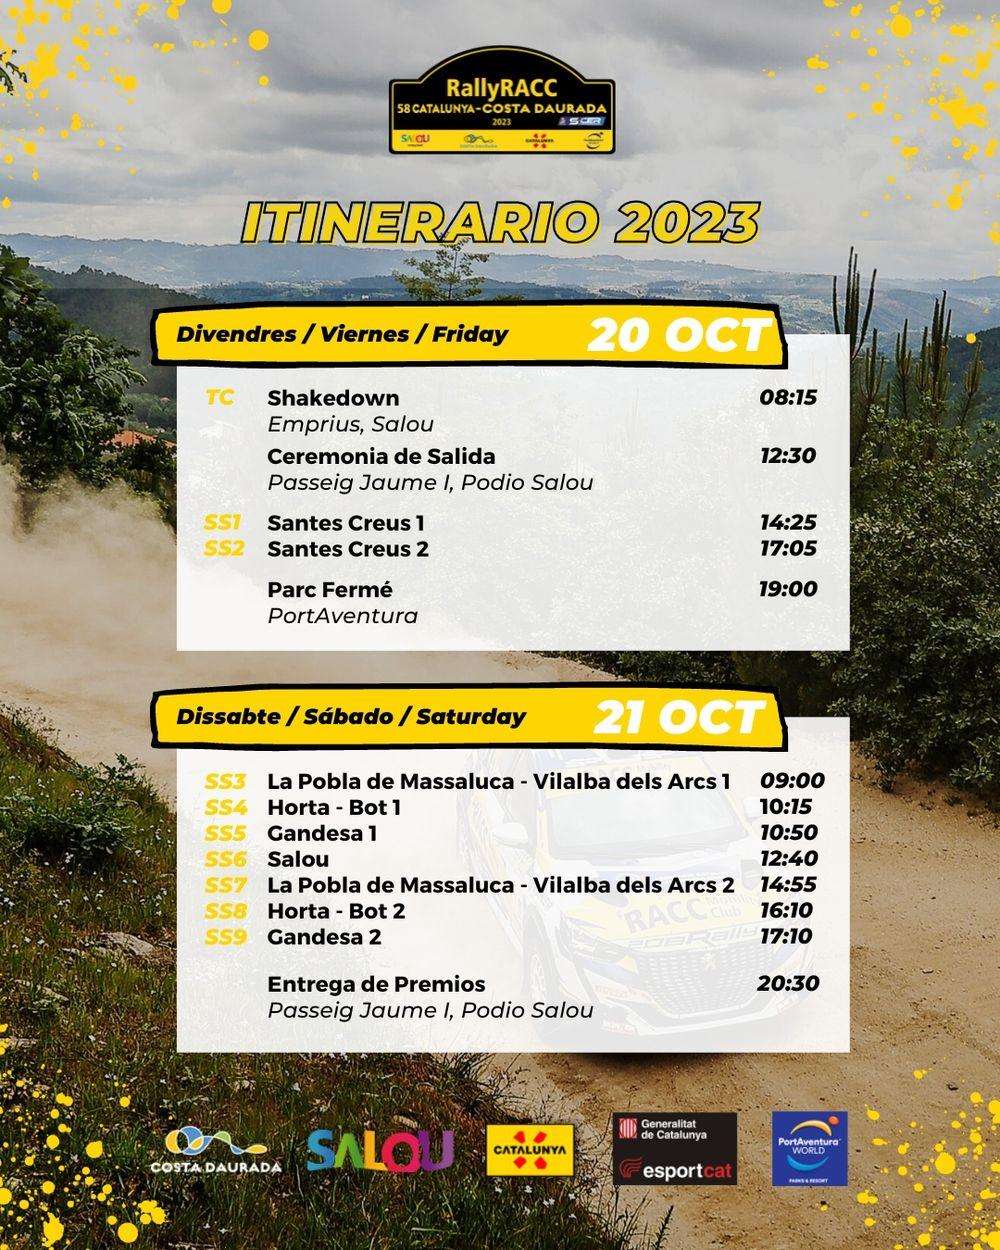 58 rallyracc cataluña costa dorada itinerario